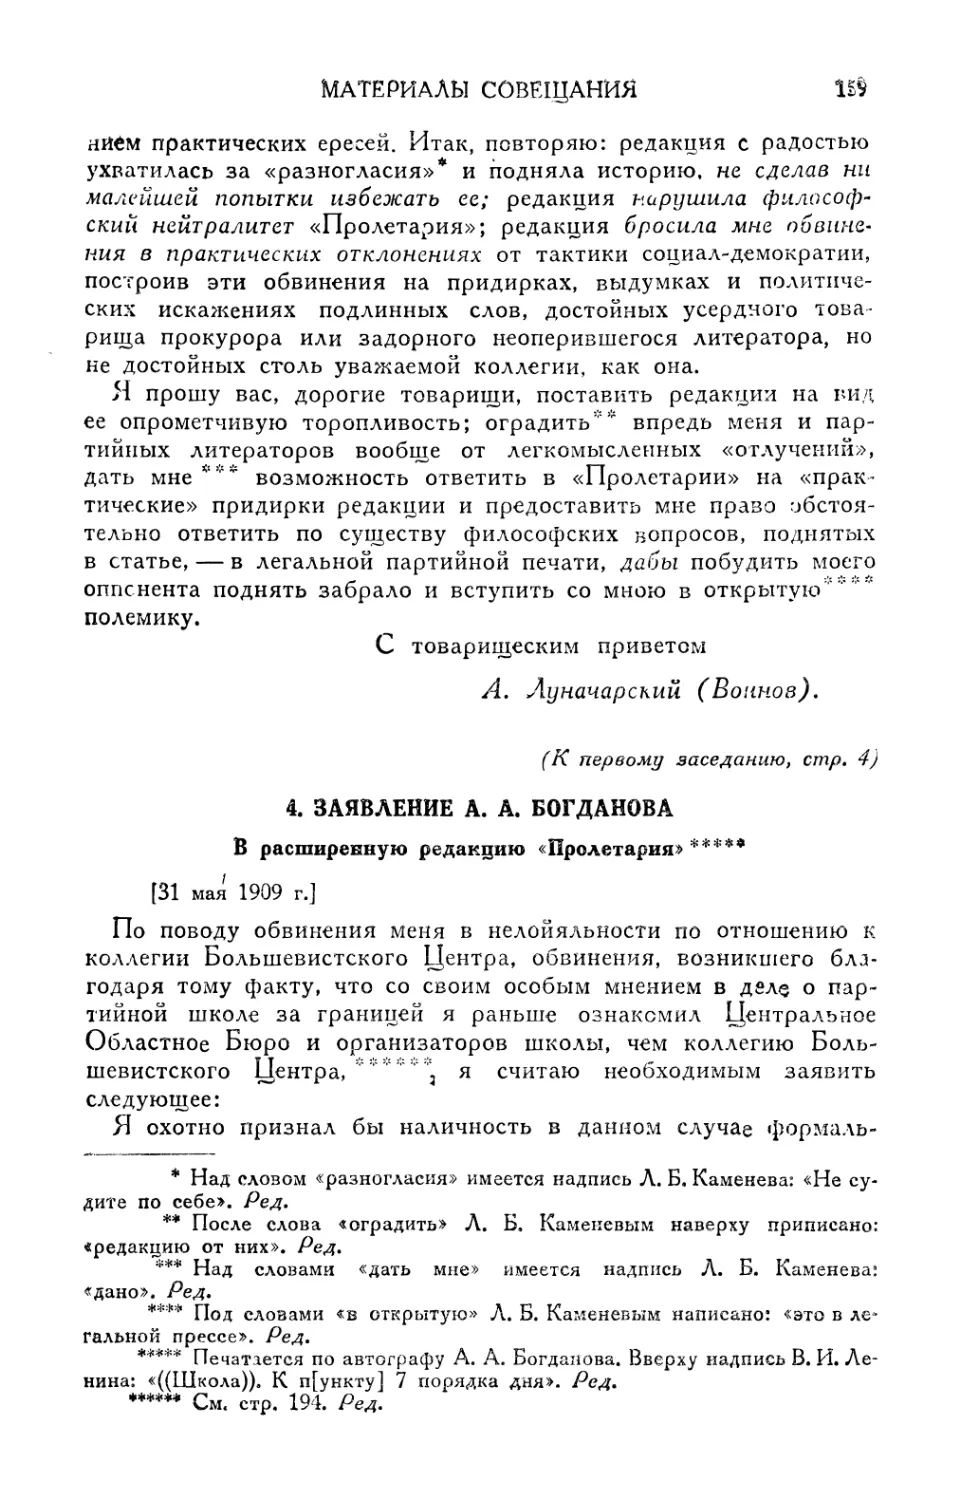 4. Заявление А. А. Богданова [июнь 1909 г.]